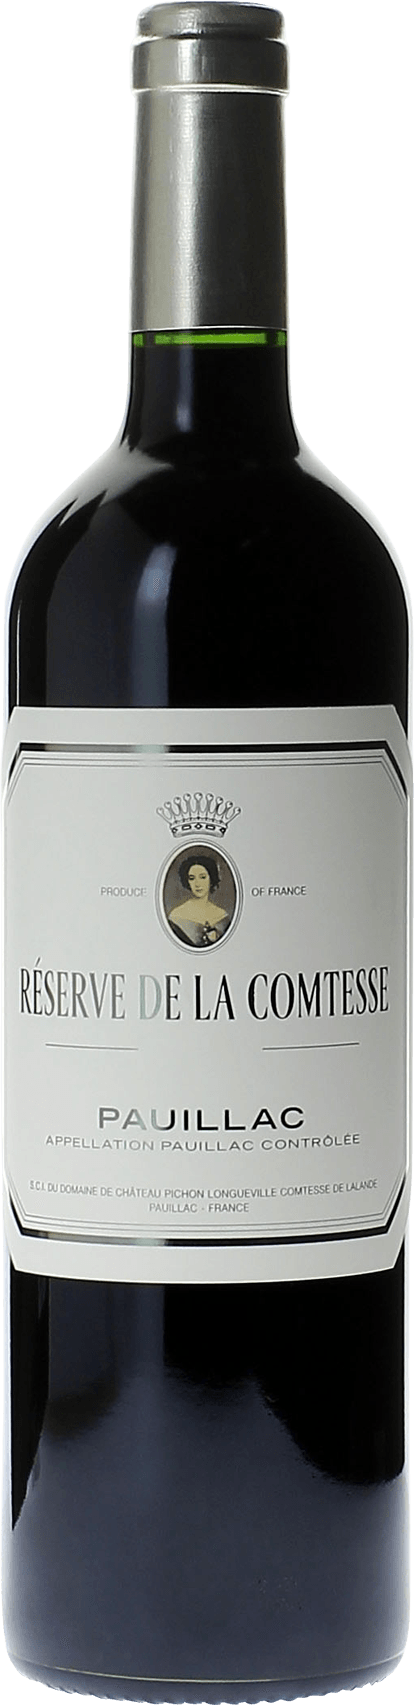 Reserve de la comtesse 1979 2nd Vin de Pichon Comtesse Pauillac, Bordeaux rouge